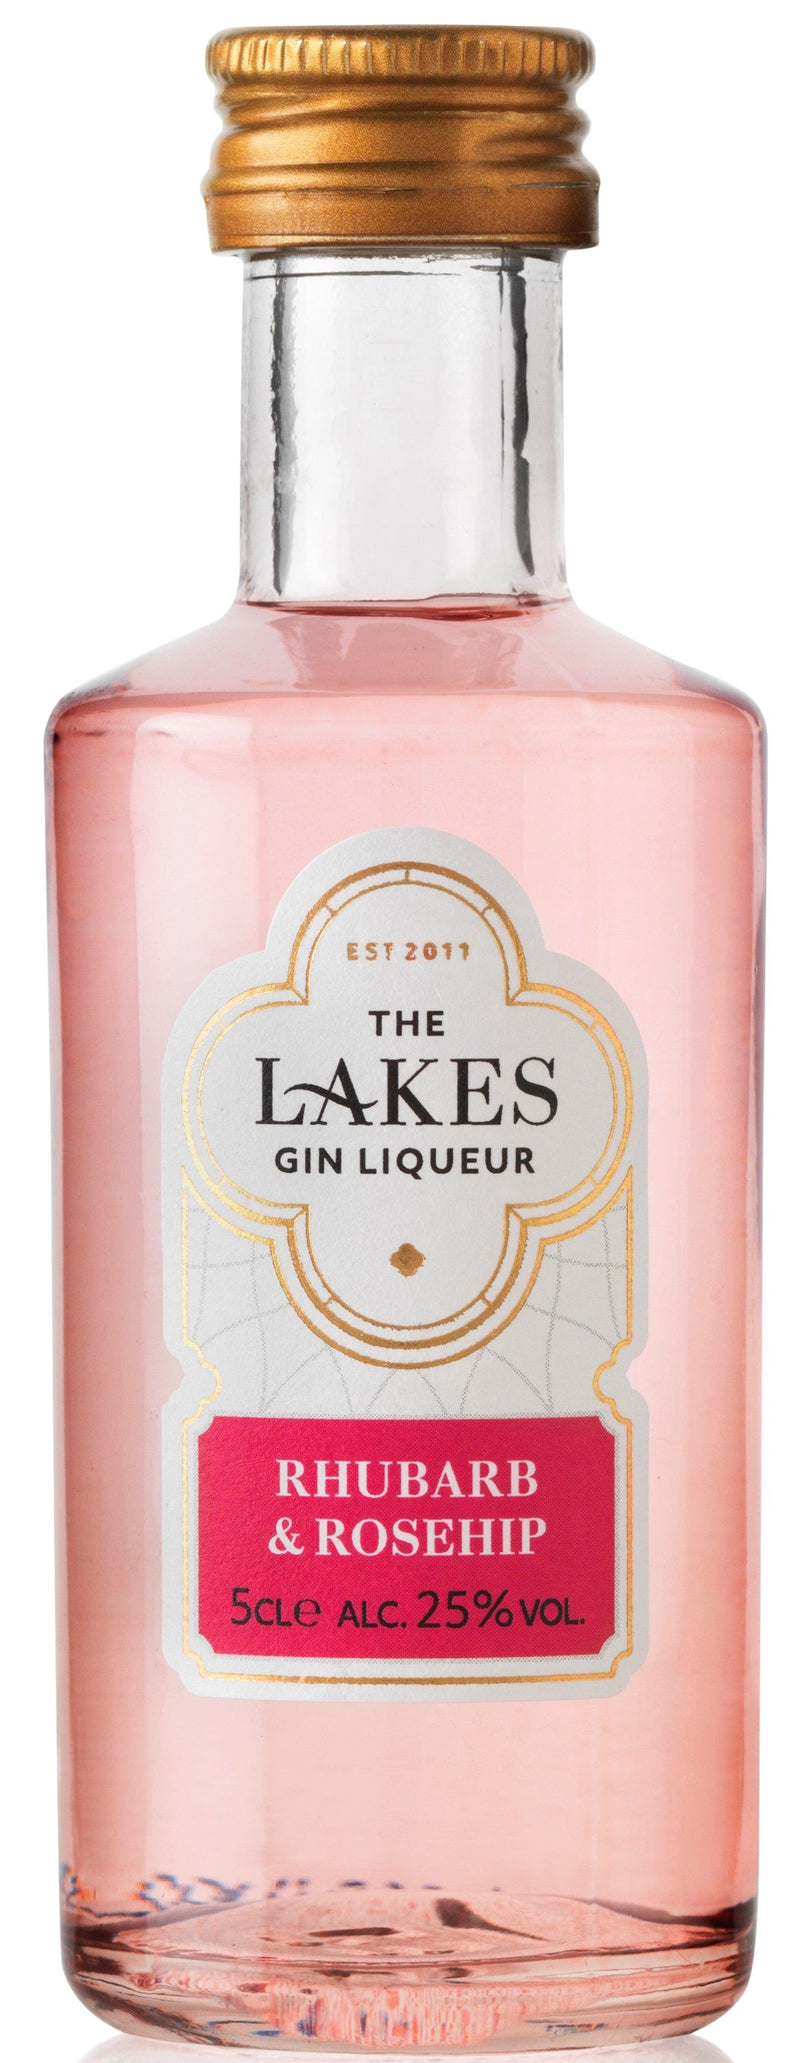 The Lakes Rhubarb & Rosehip Gin Liqueur Miniature 5cl